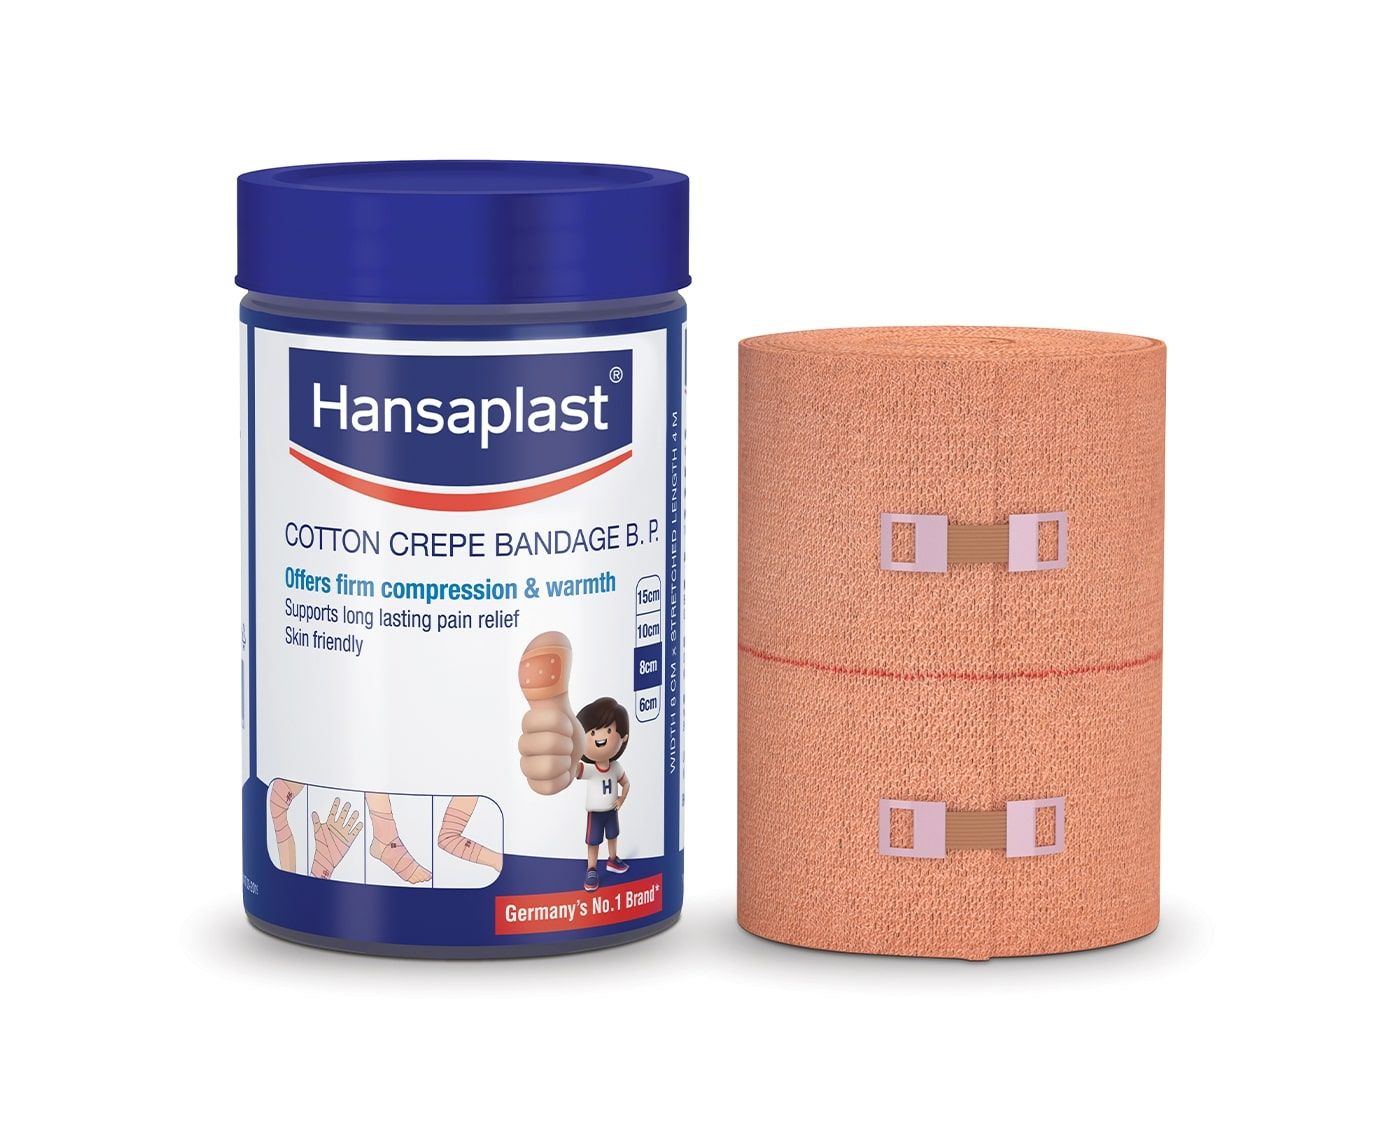 Buy Hansaplast Cotton Crepe Bandage B.P. 8 cm x 4 m, 1 Count Online